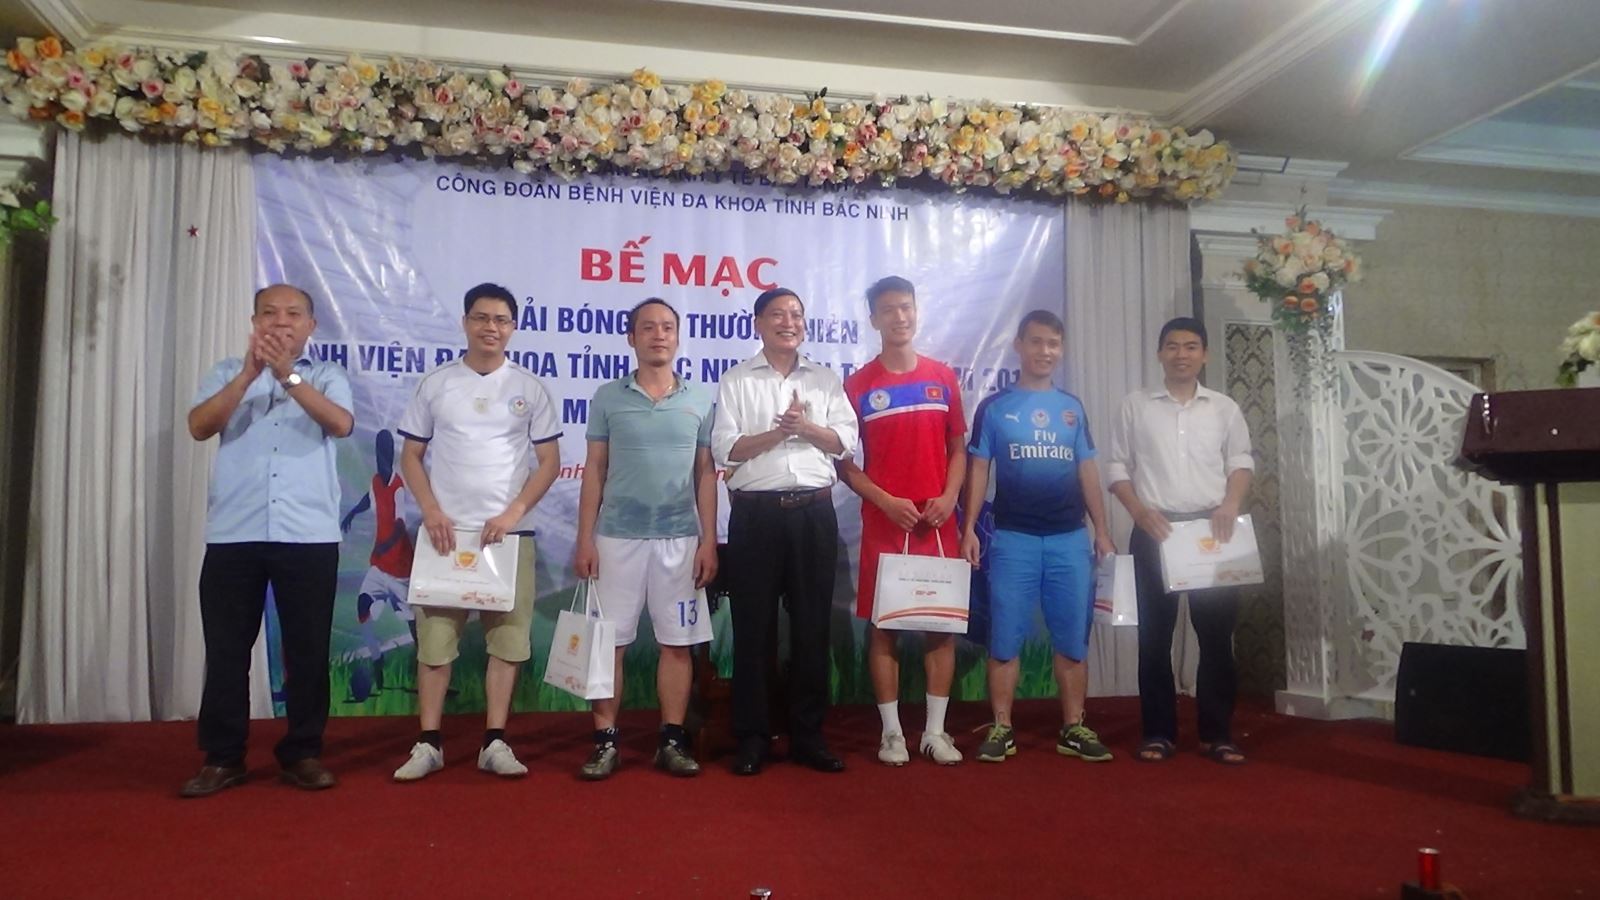 Bệnh viện đa khoa tỉnh Bắc Ninh tổ chức Giải bóng đá bệnh viện lần thứ II năm 2017 